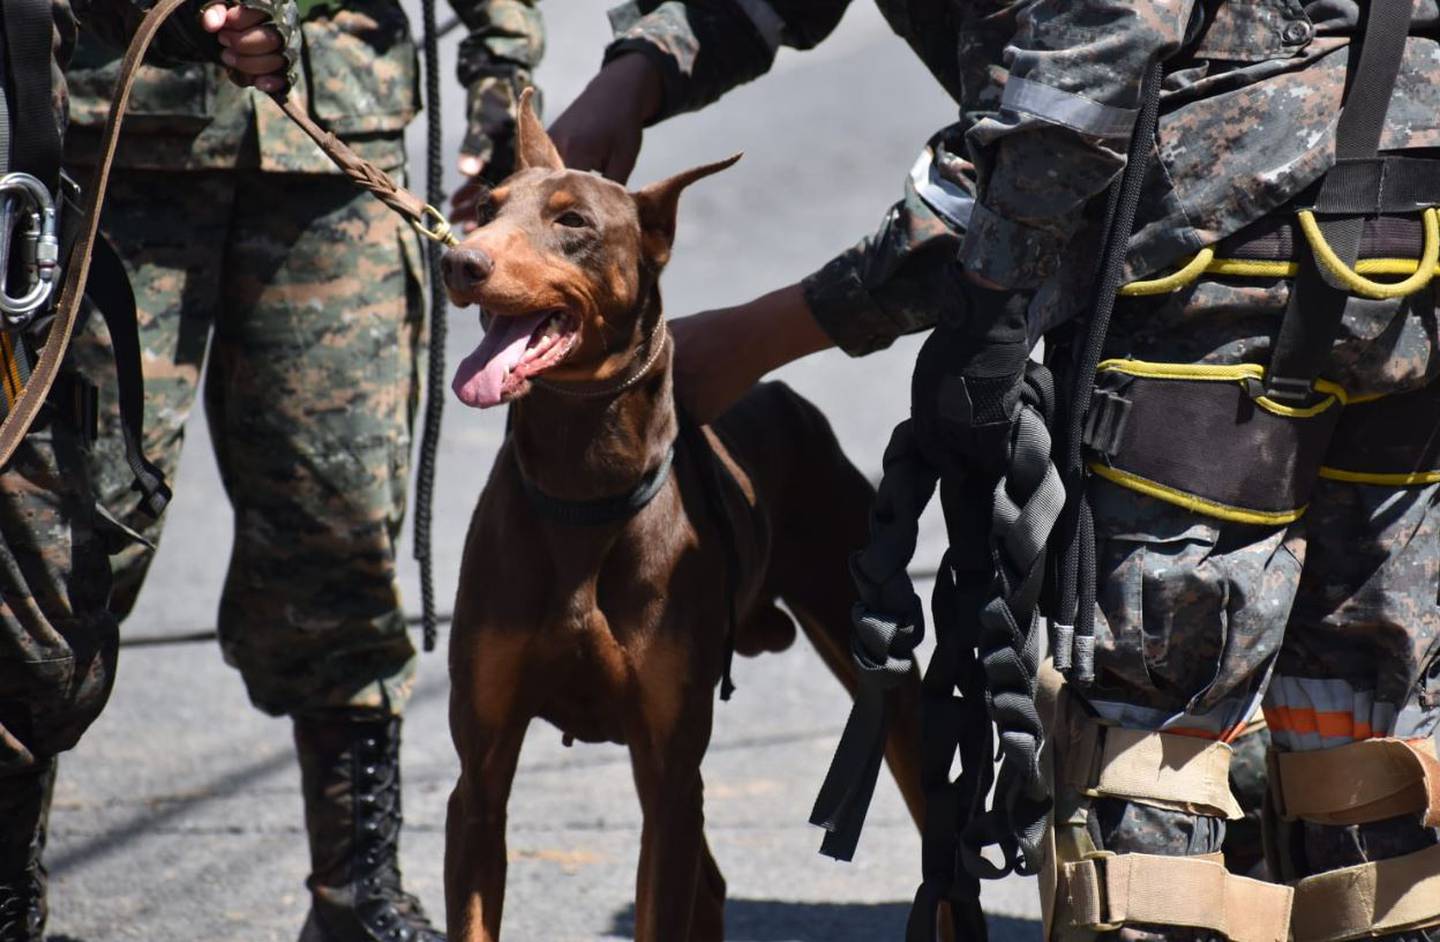 La unidad canina de la Primera Brigada de la Policía Militar de la "Guardia de Honor" del Ejército de Guatemala apoya con el canino K9 "Blacky", en el socavamiento en la zona 6 de Villa Nueva para ayudar con la búsqueda y rescate las víctimas desaparecidas.dfd